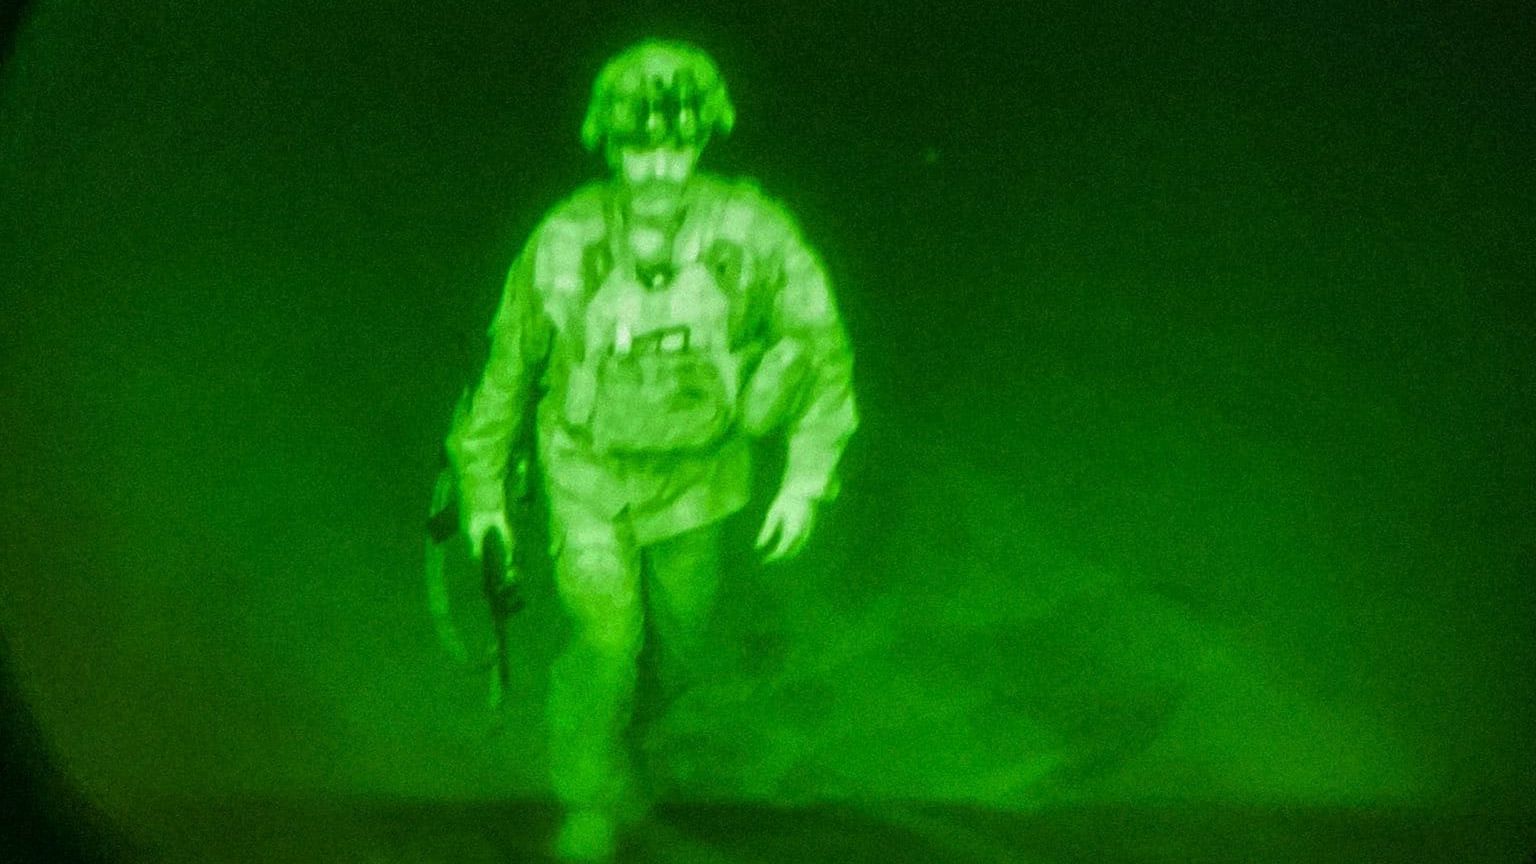 <div class="paragraphs"><p>अफगानिस्तान छोड़ने वाले आखरी अमेरिकी सैनिक कमांडर क्रिस डोनह्यू</p></div>